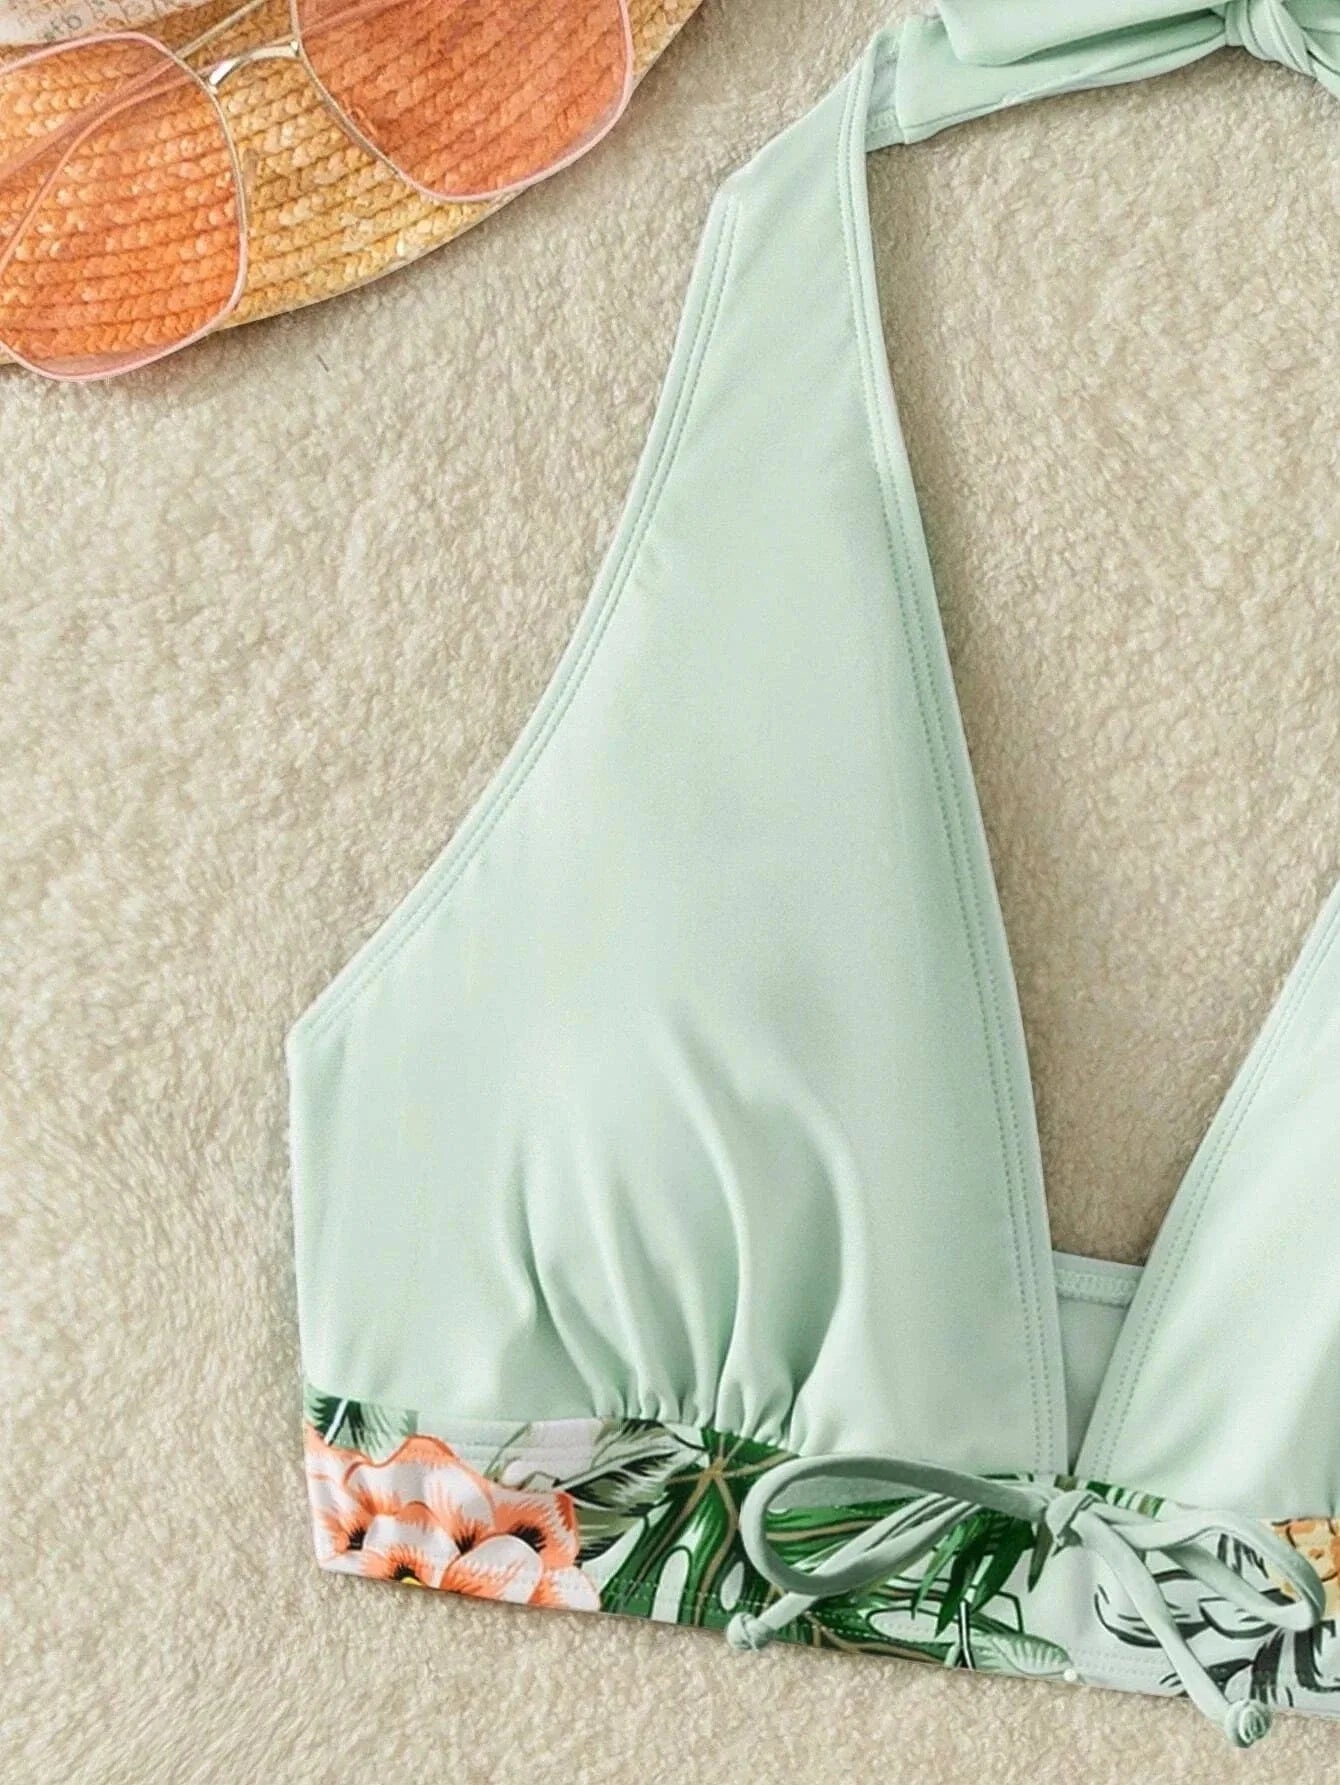 New Women's Bikini Sexy Split High Waist Swimsuit Lace Printed Solid Color Swimwear Women Bathing Suit